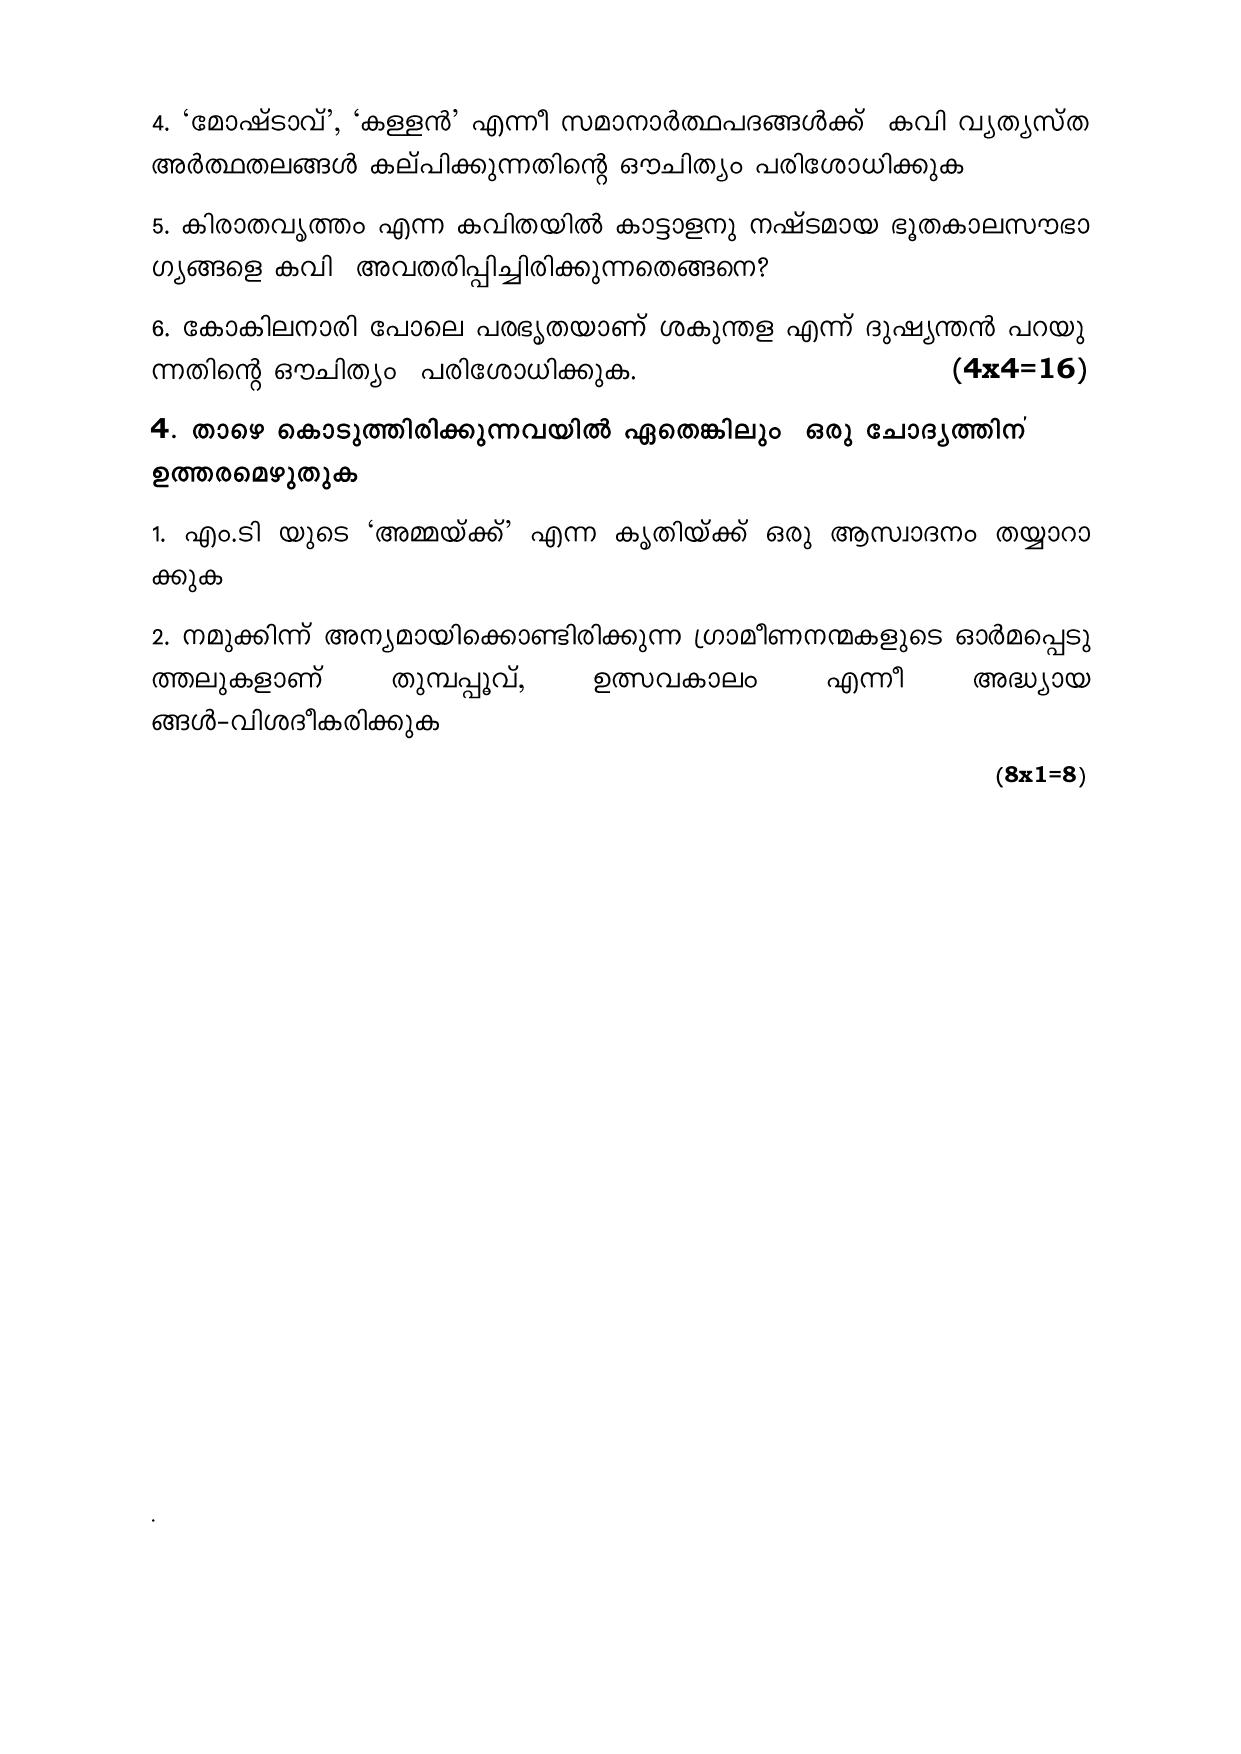 CBSE Class 12 Malayalam -Sample Paper 2019-20 - Page 4